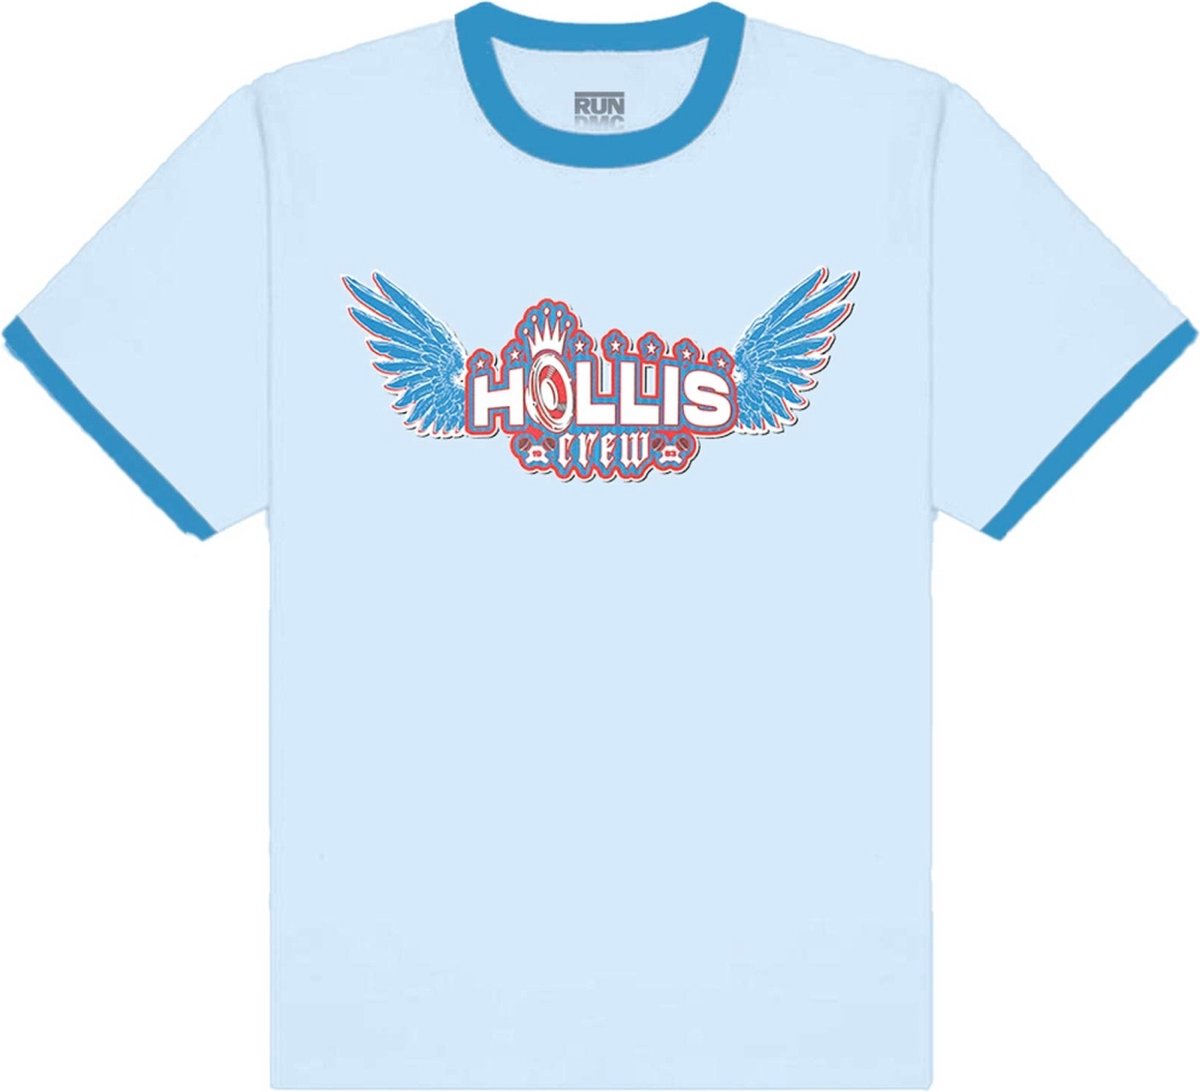 Run DMC - Hollis Crew Heren T-shirt - XL - Blauw